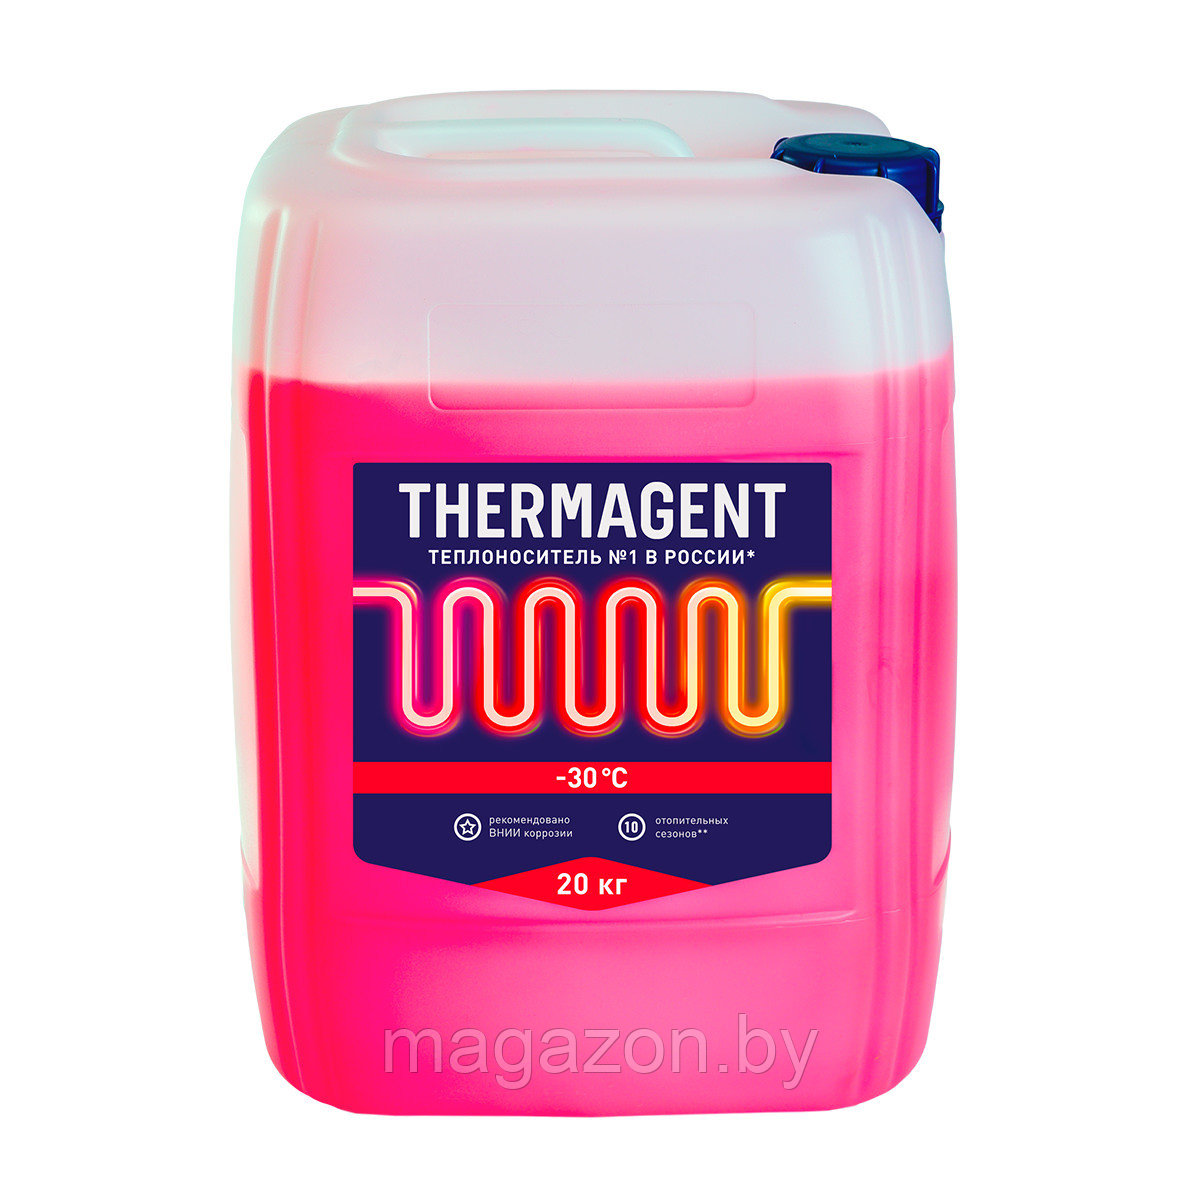 Теплоноситель Thermagent -30°C, 20 кг